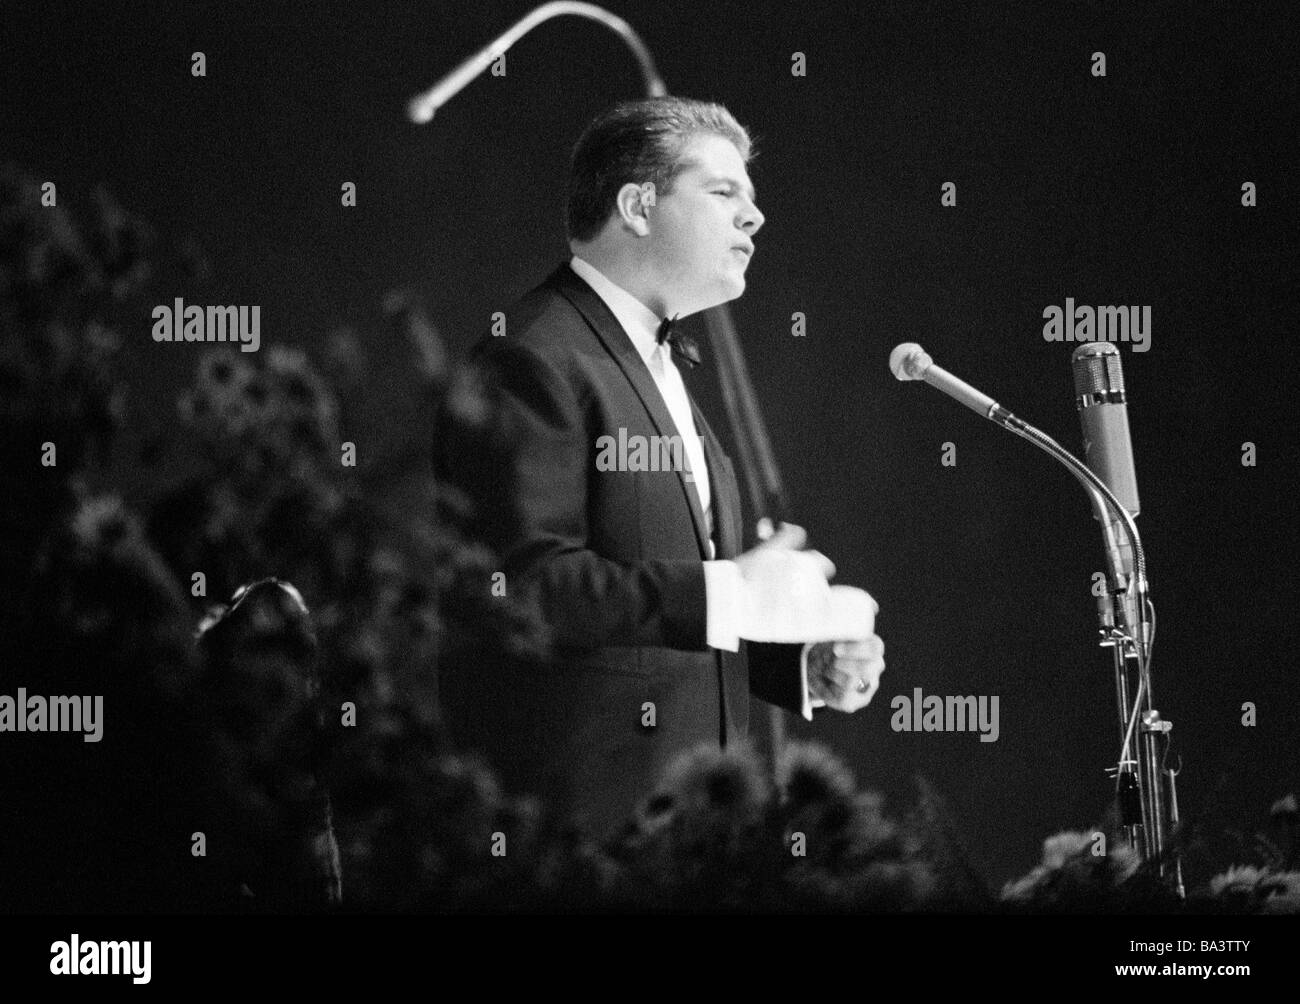 60 fotografías en blanco y negro, eventos culturales 1966 en el Gruga Hall en Essen, presentación de premios, Loewenverleihung por Radio Luxemburgo, León de Radio Luxemburgo, RTL, la fotografía muestra a Bill Ramsey, D-Essen, área de Ruhr, Renania del Norte-Westfalia Foto de stock